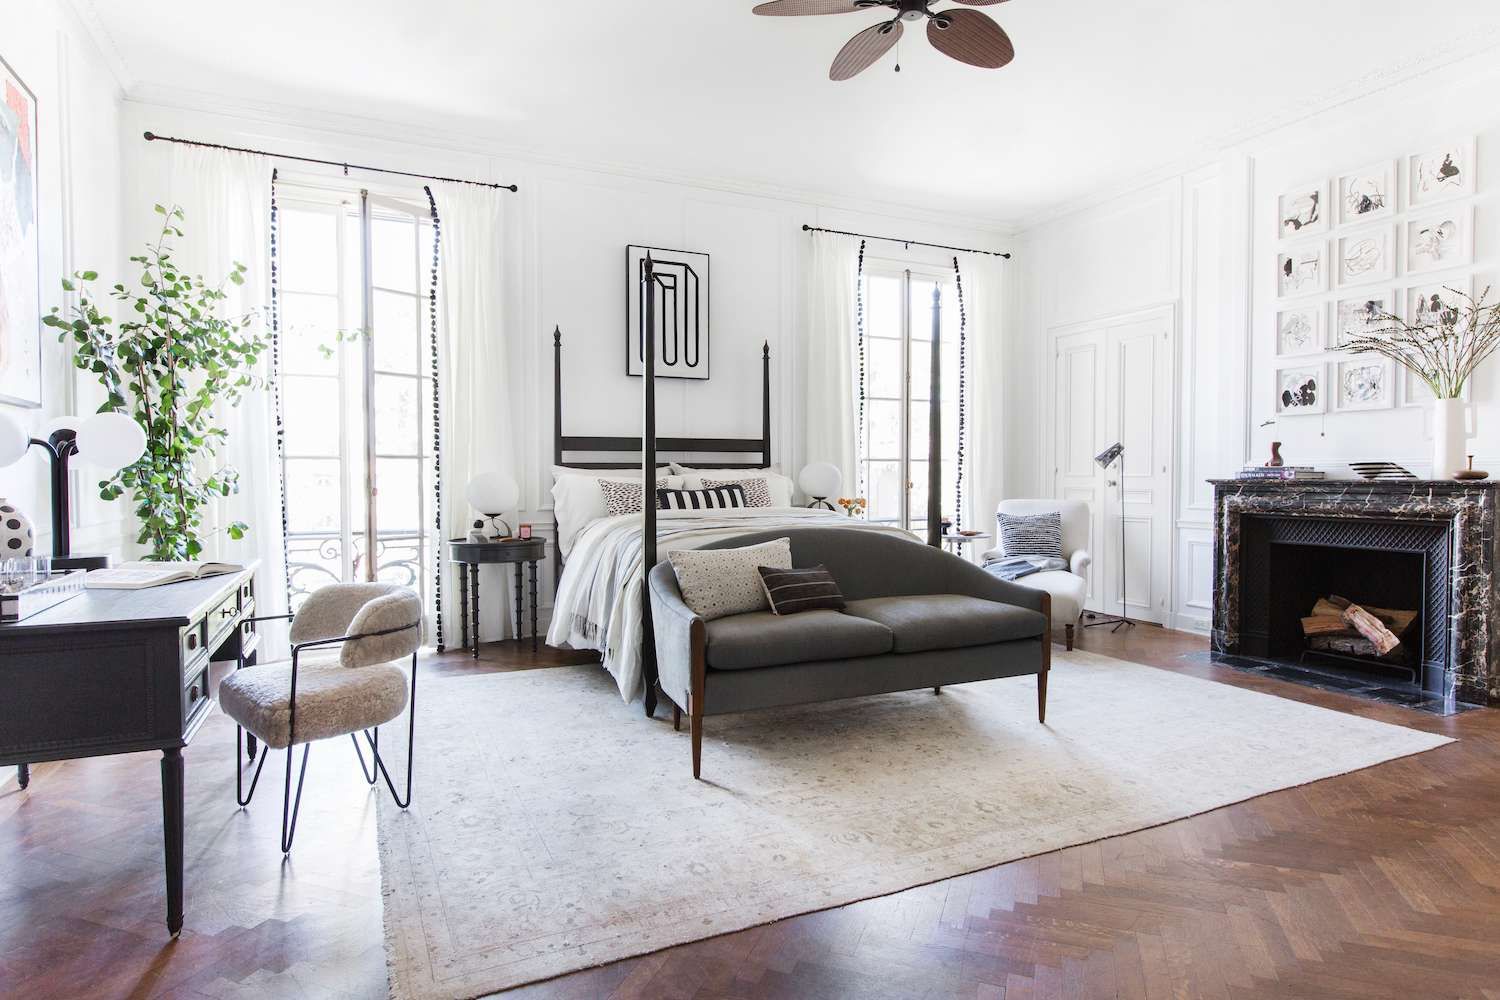 Лучшие стили для дизайна спальни - дизайнеры назвали свои три любимых - Недвижимость